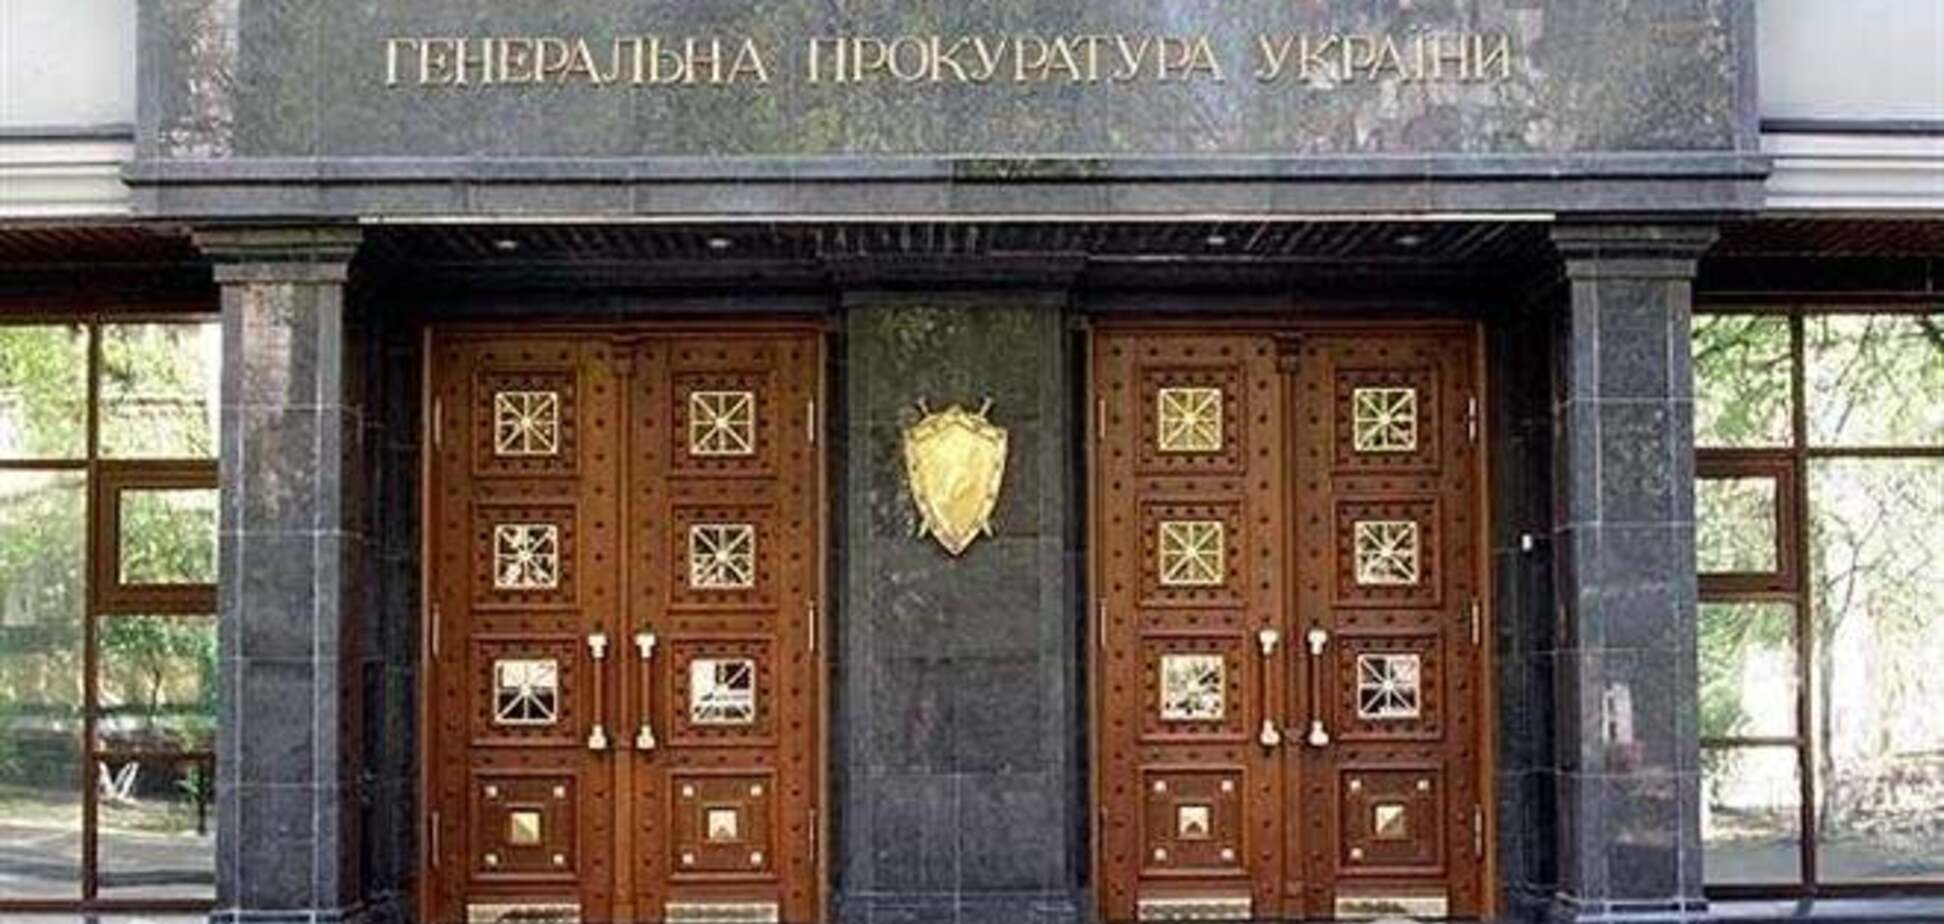 Местным советам Черновцов, Черкасс и Львова запретили обнародовать решения